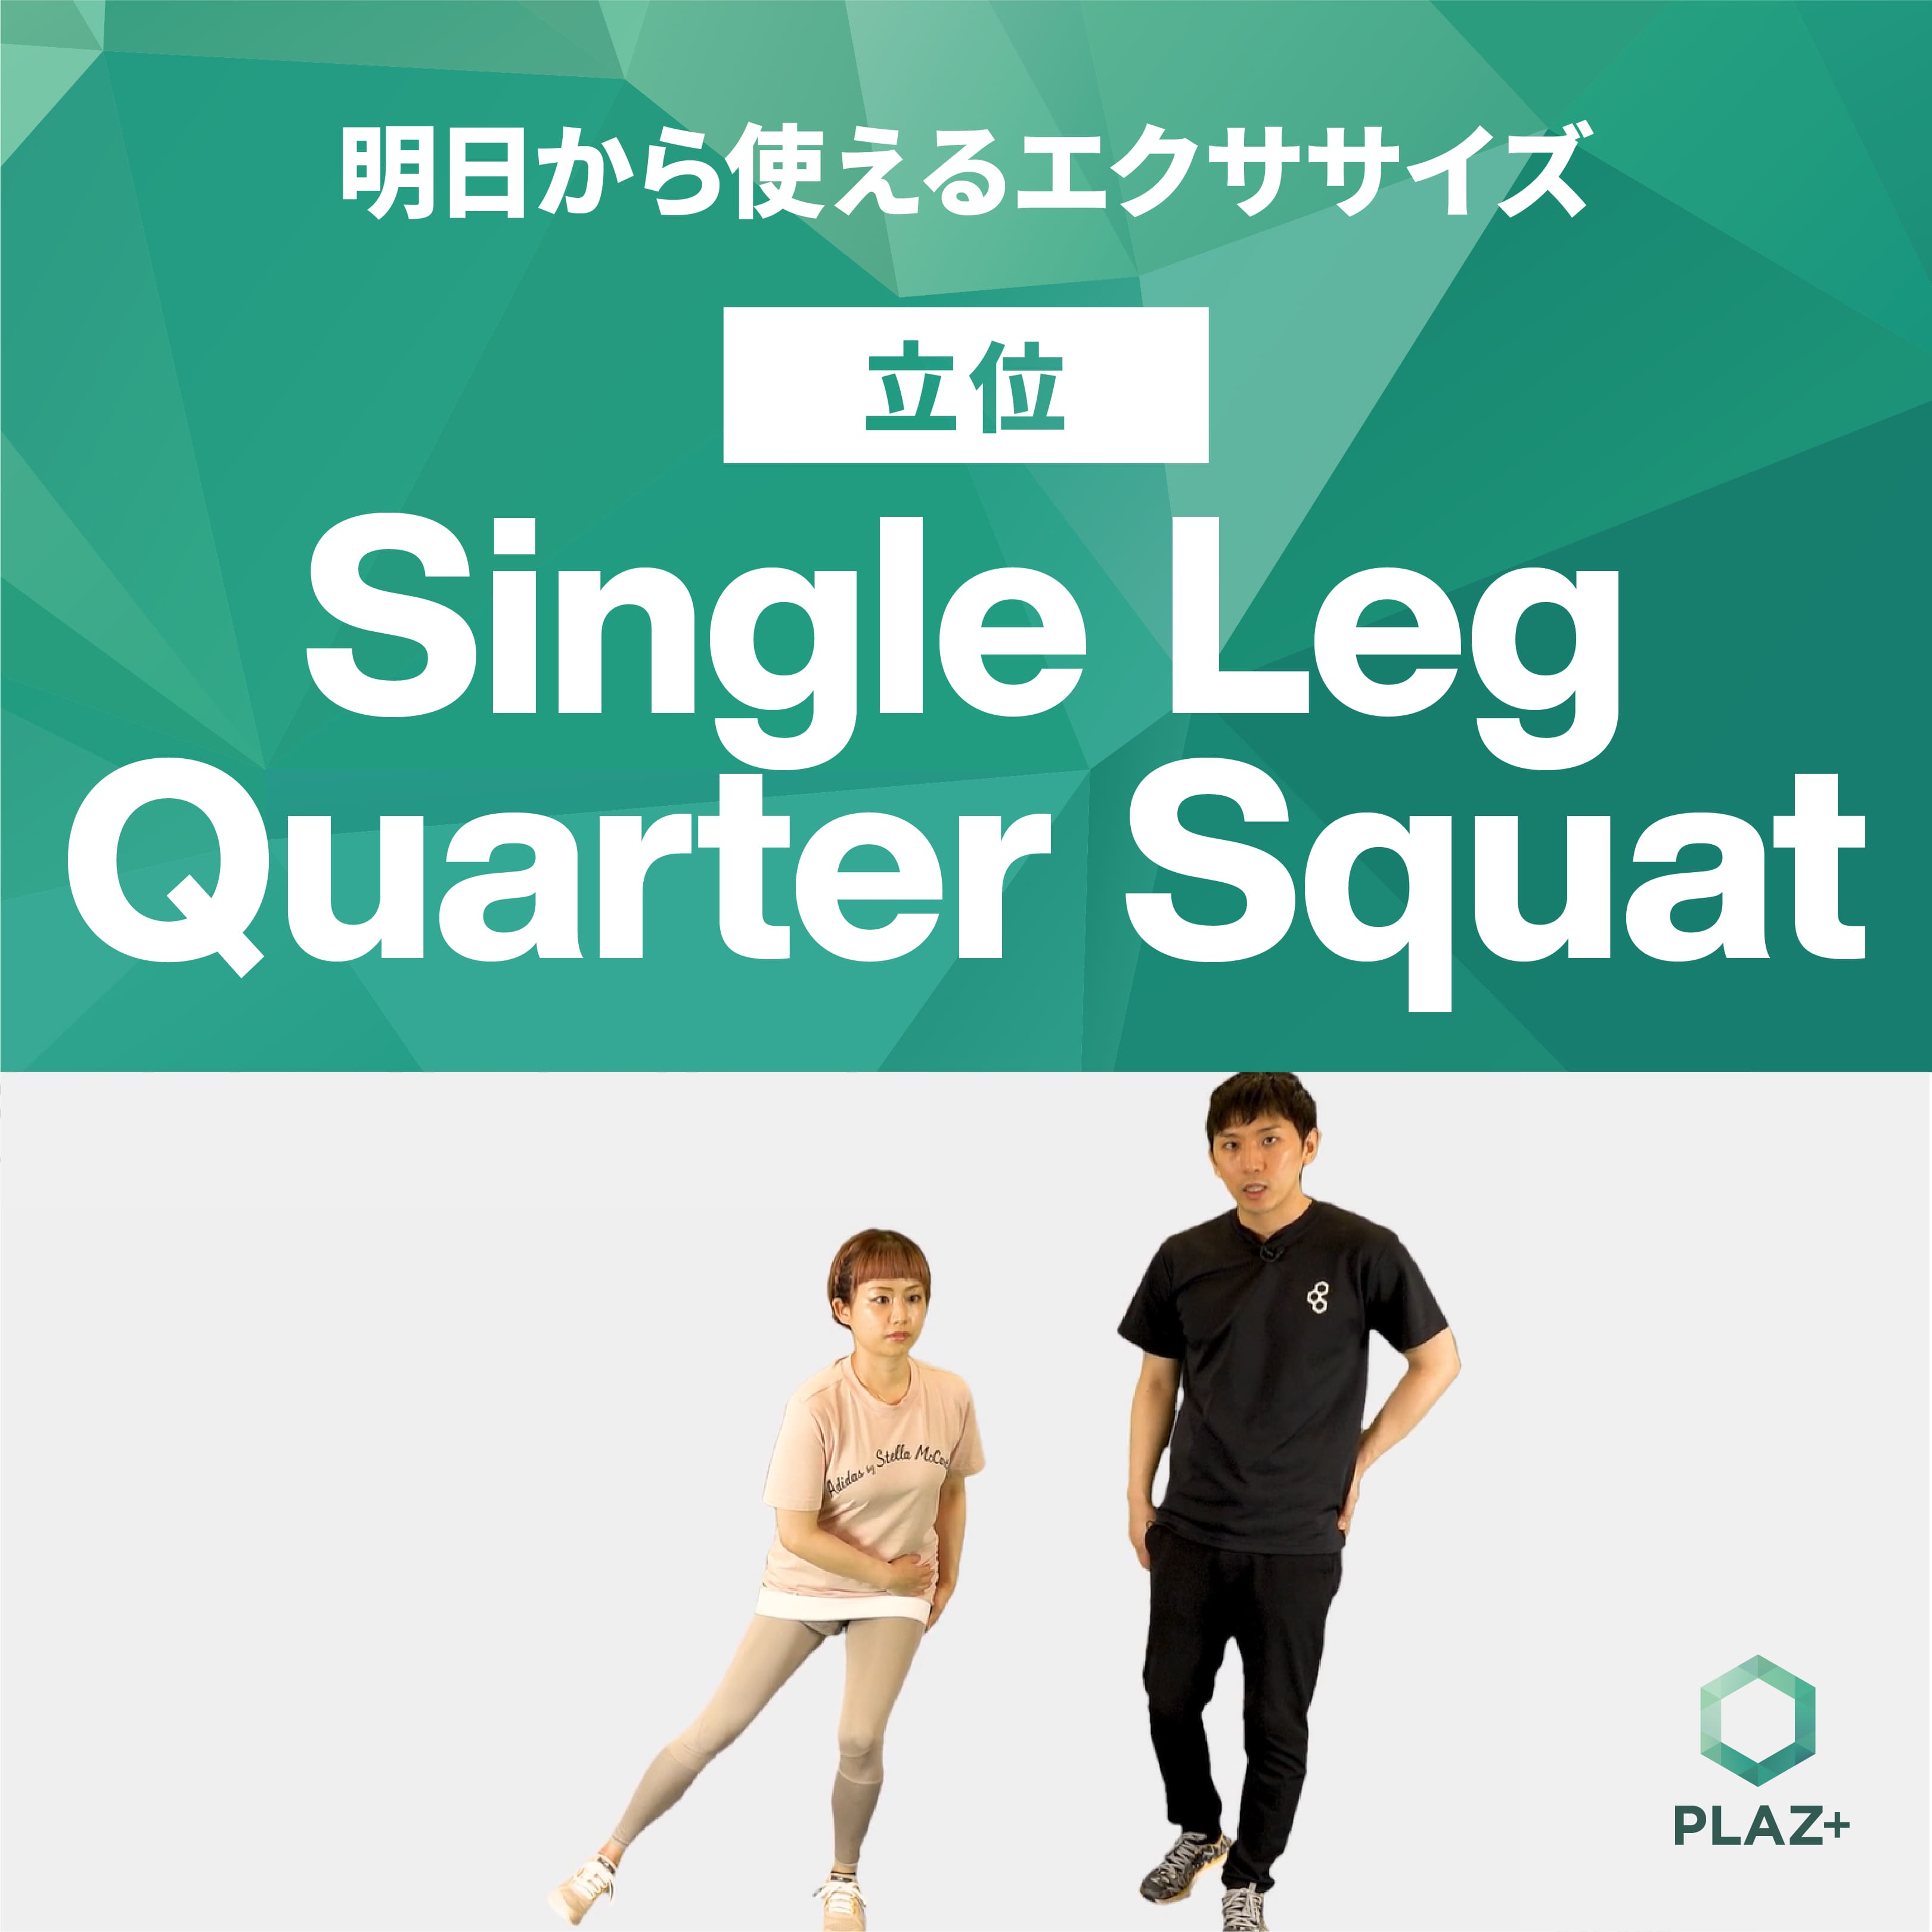 Single Leg Quarter Squat